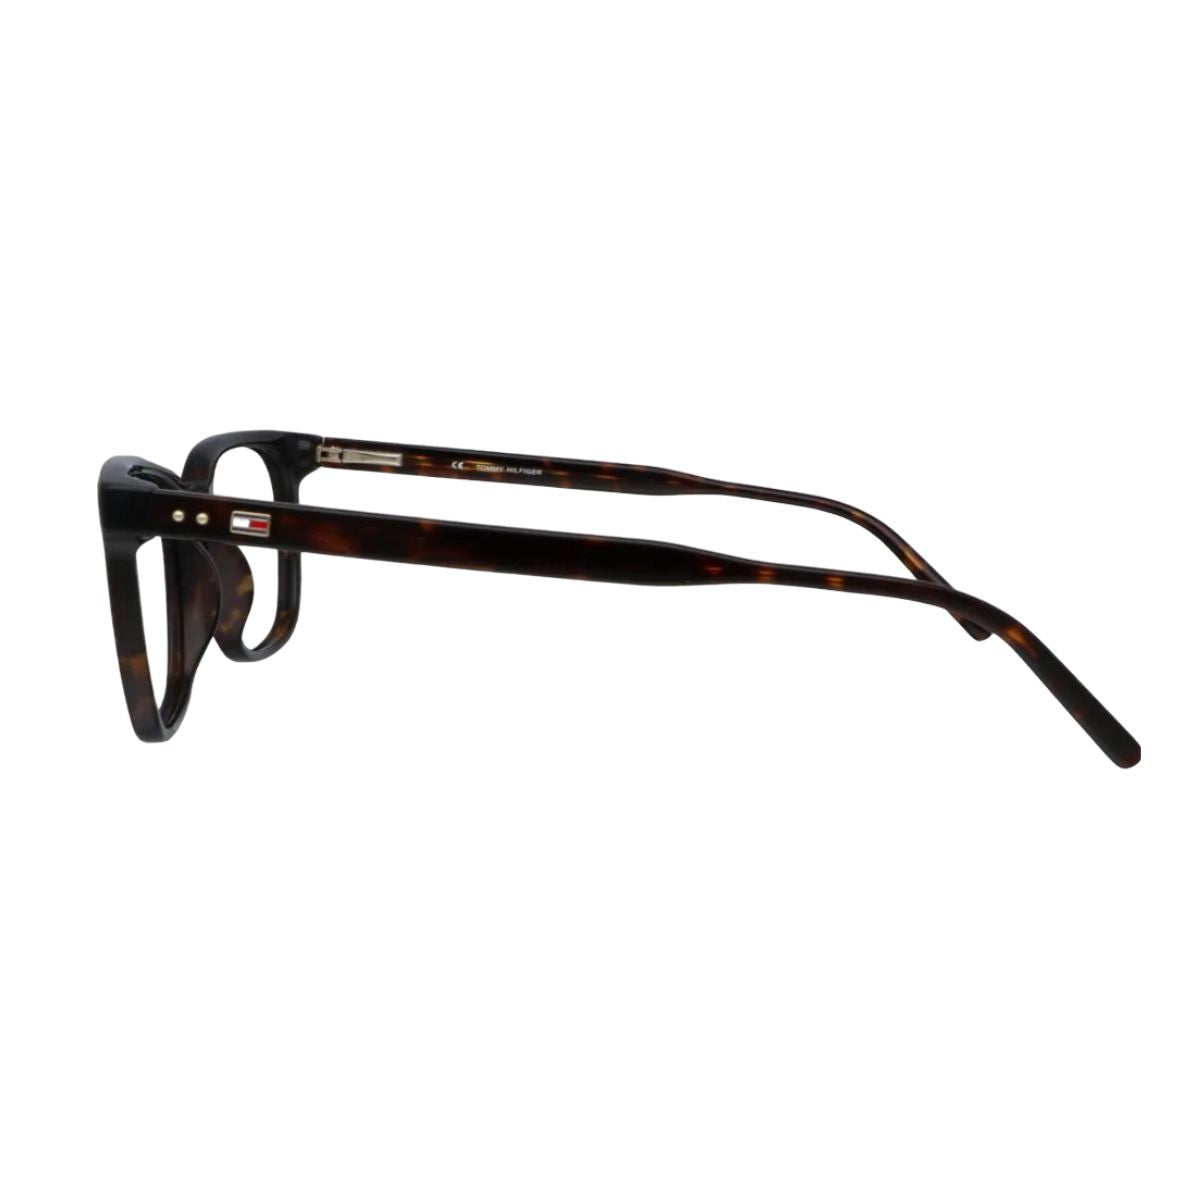 "Tommy Hilfiger 3183 C2 prescription eyeglasses frame for men's at optorium"